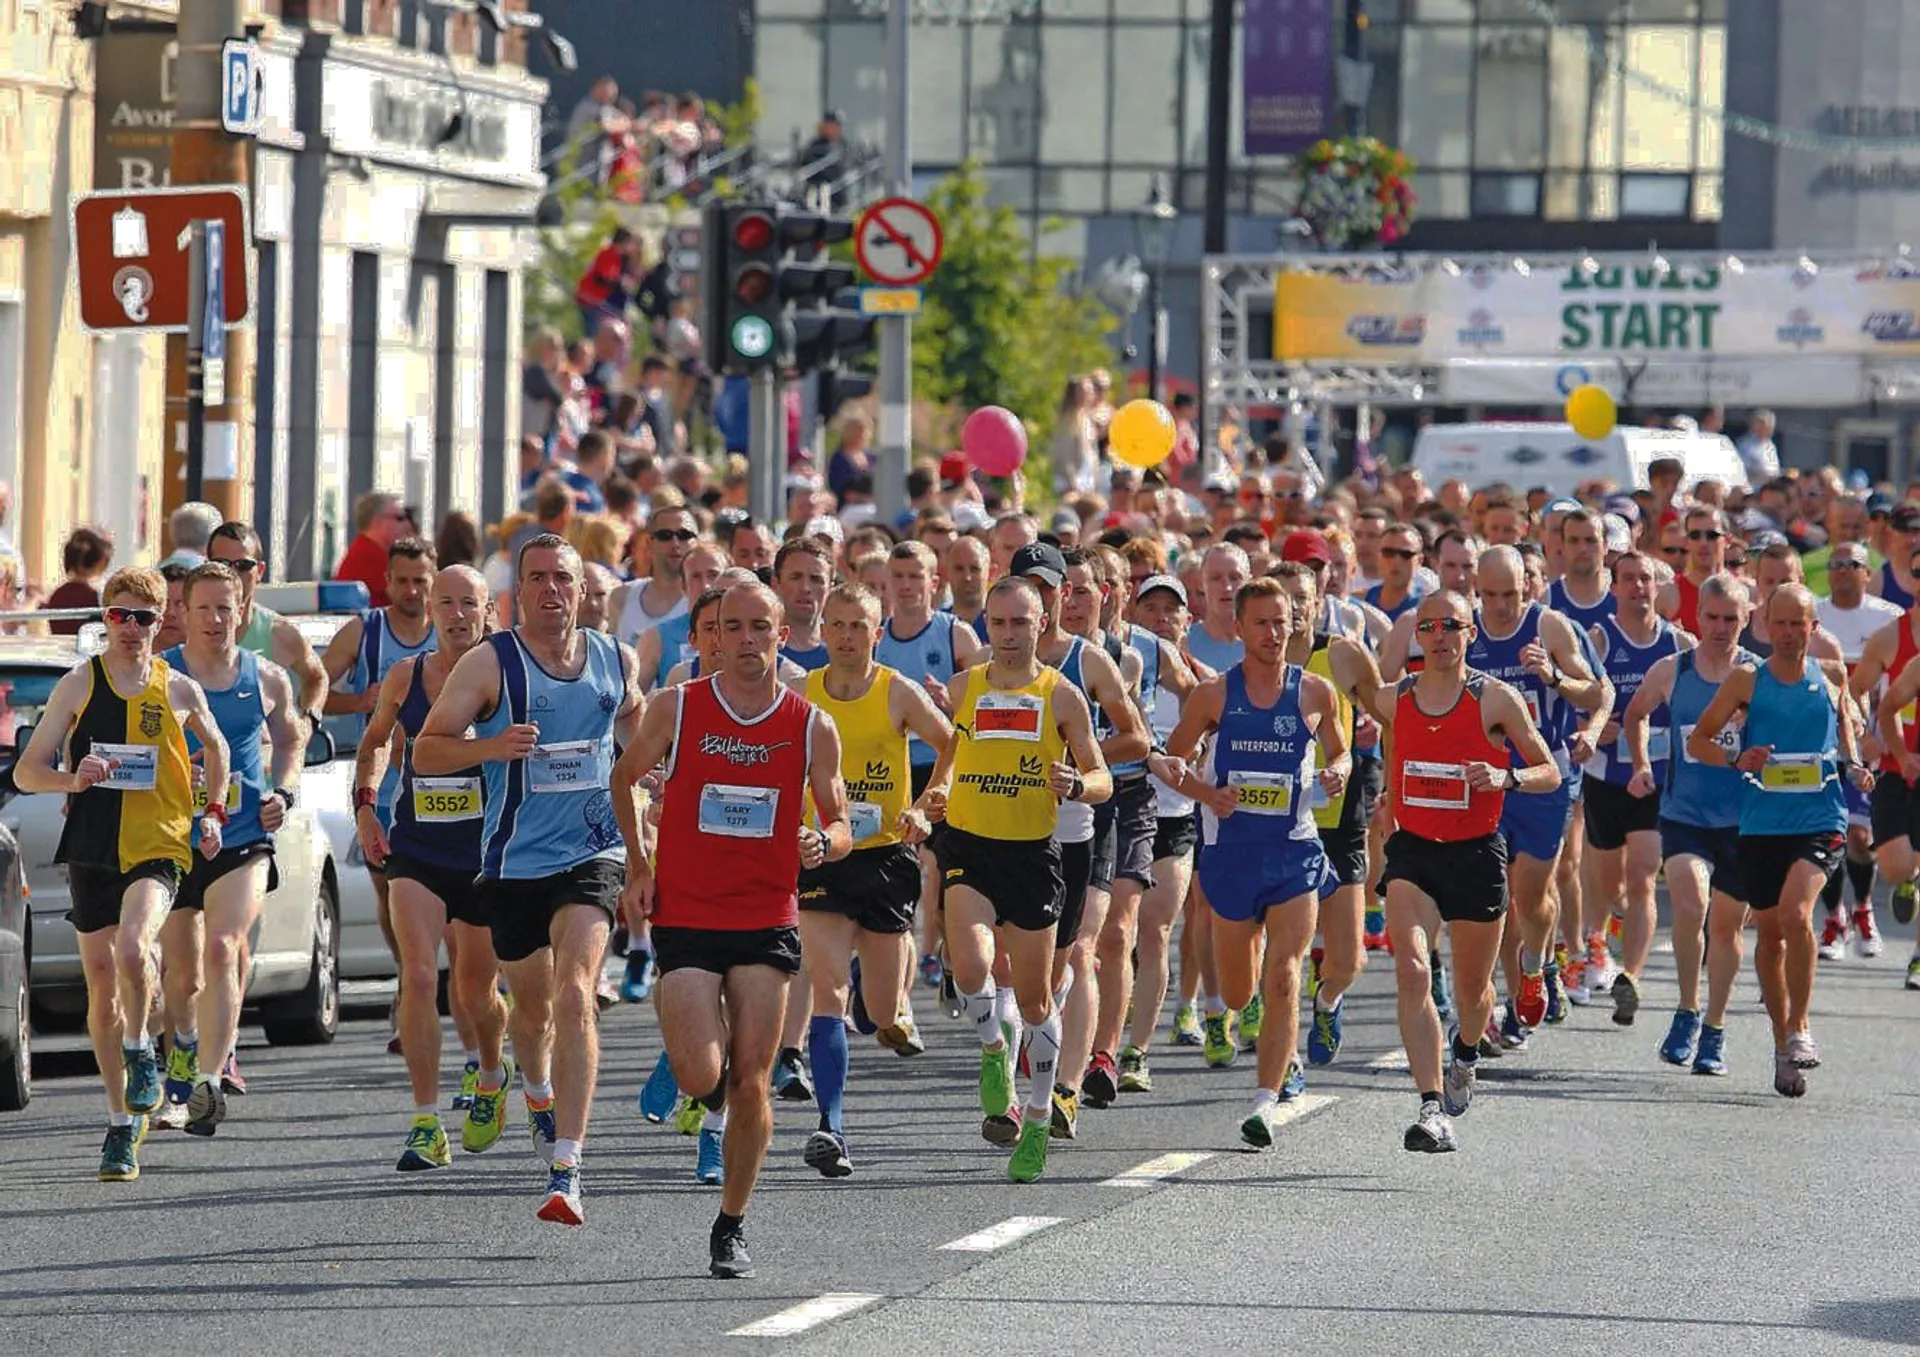 Waterford Viking Marathon